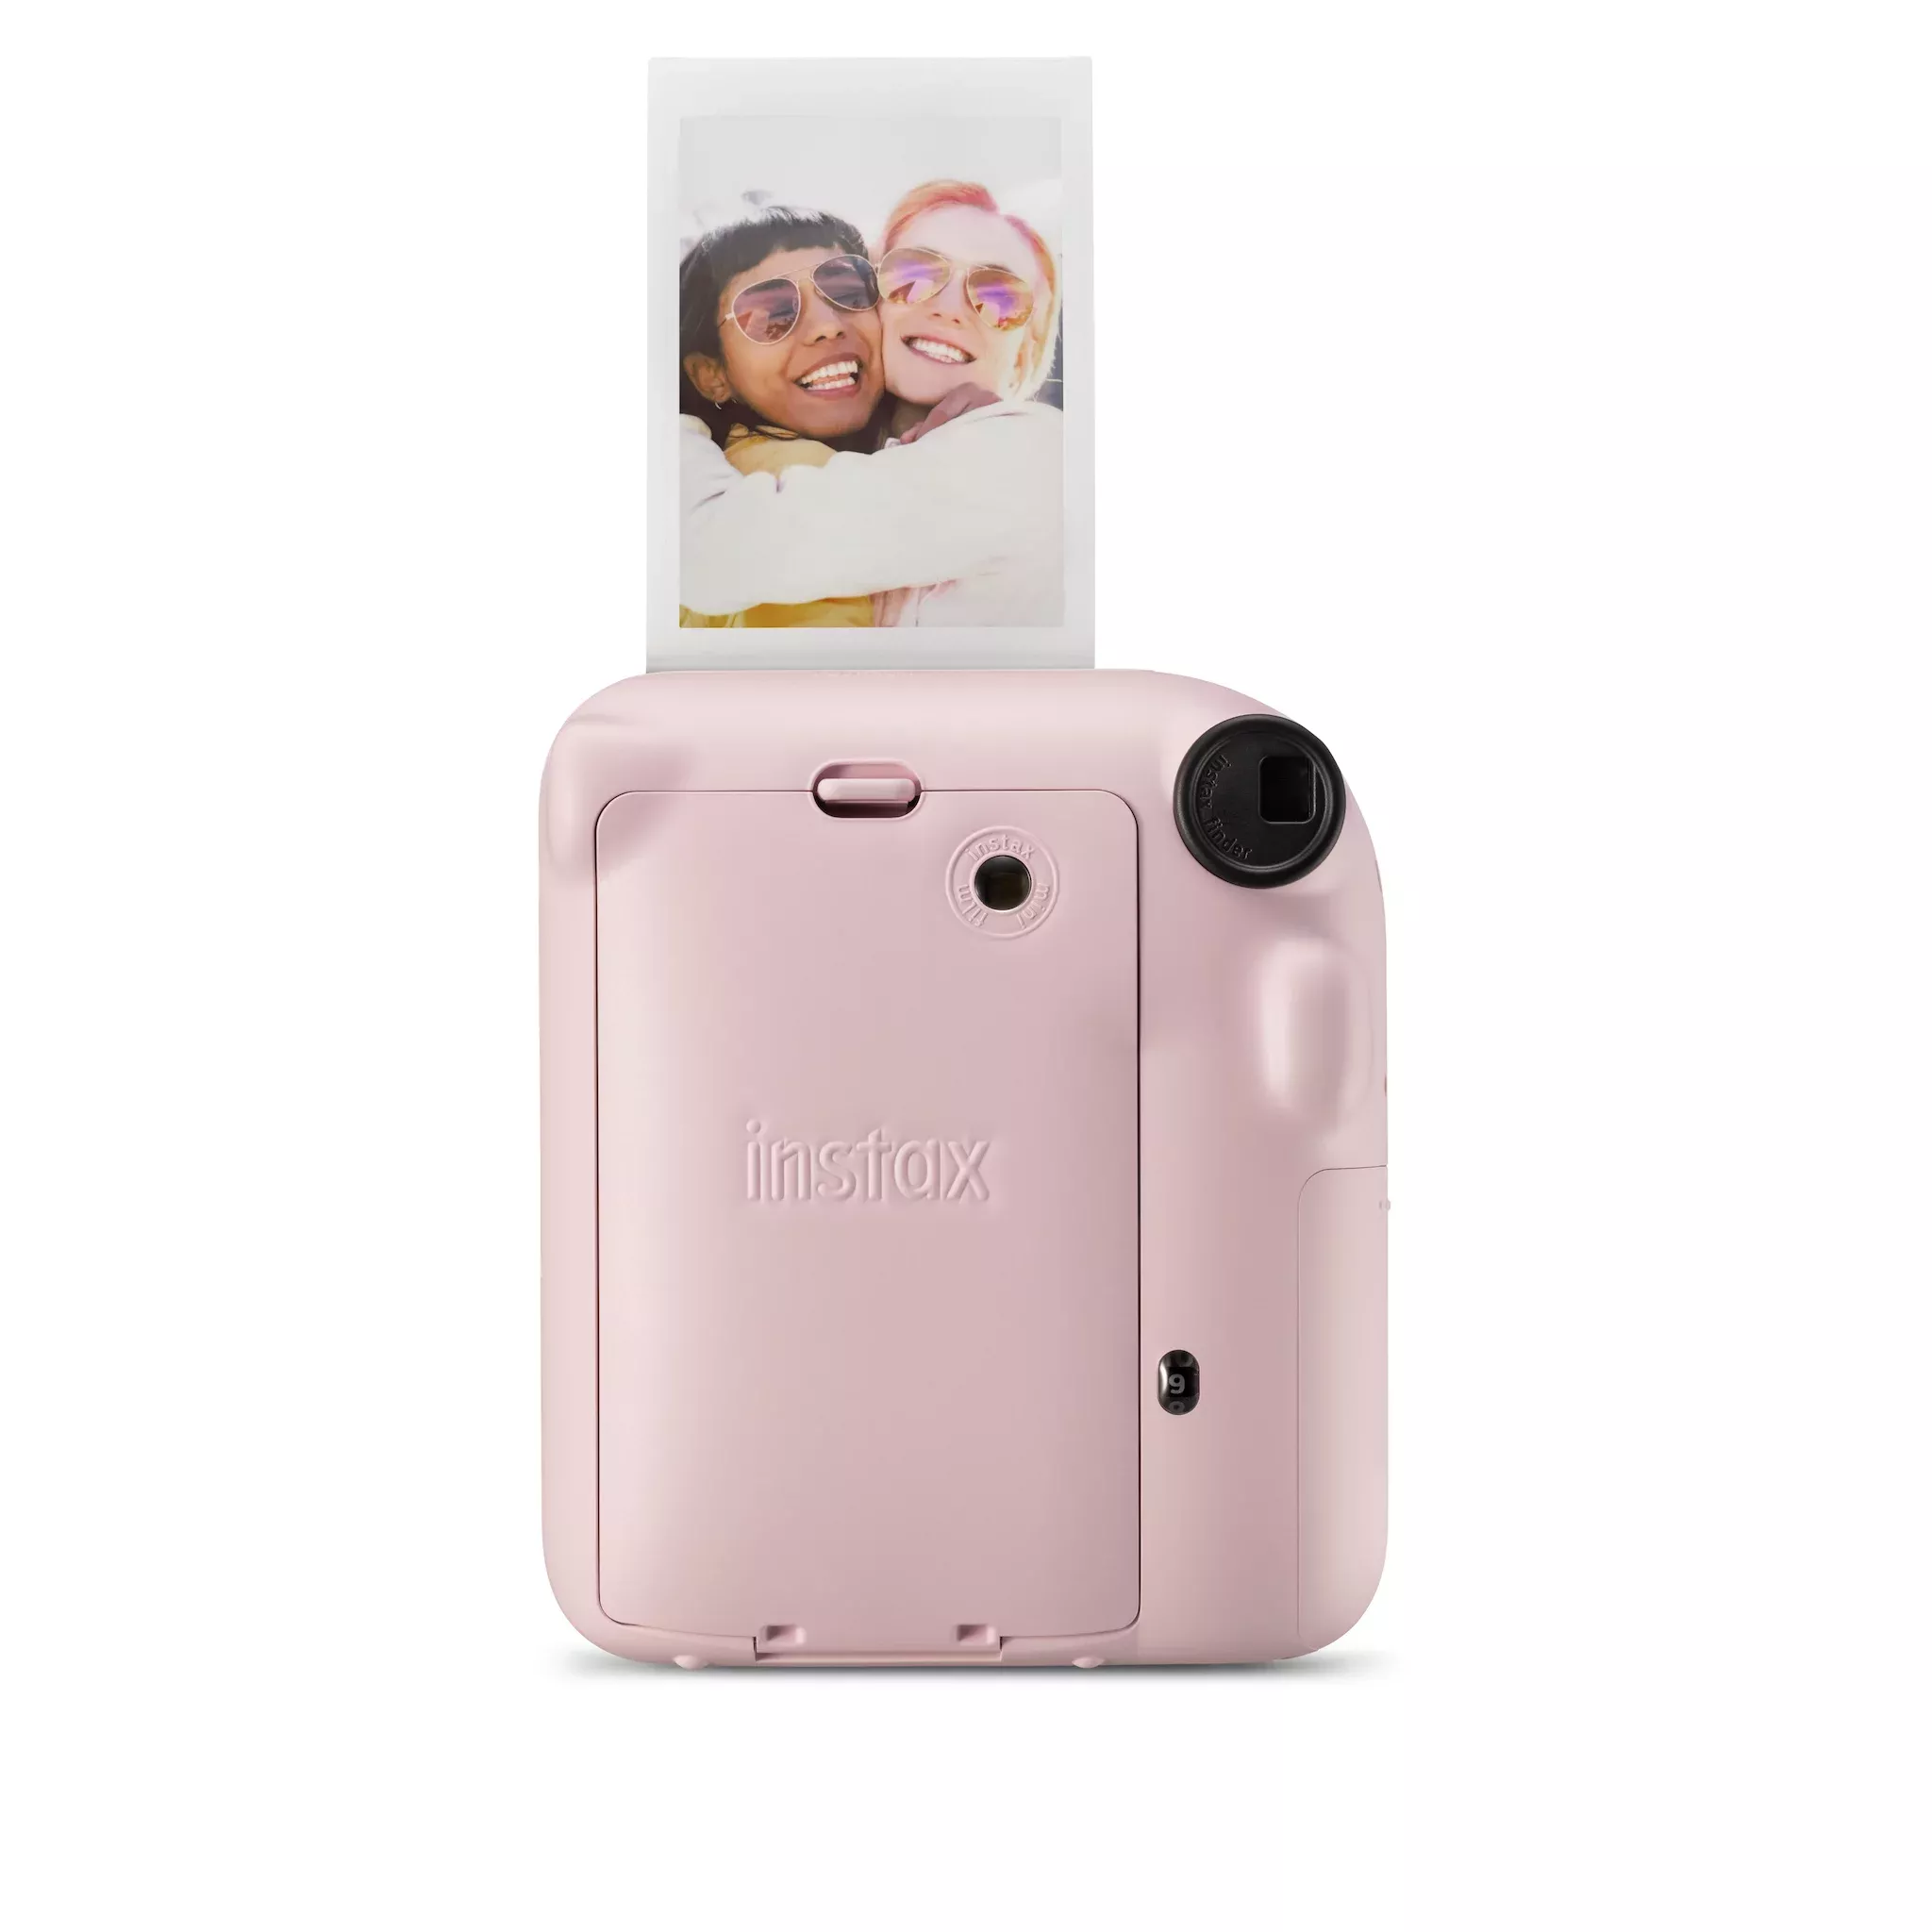 Mini Instax | Blossom Blossom Pink 656680011 Pink Fujifilm | 12,